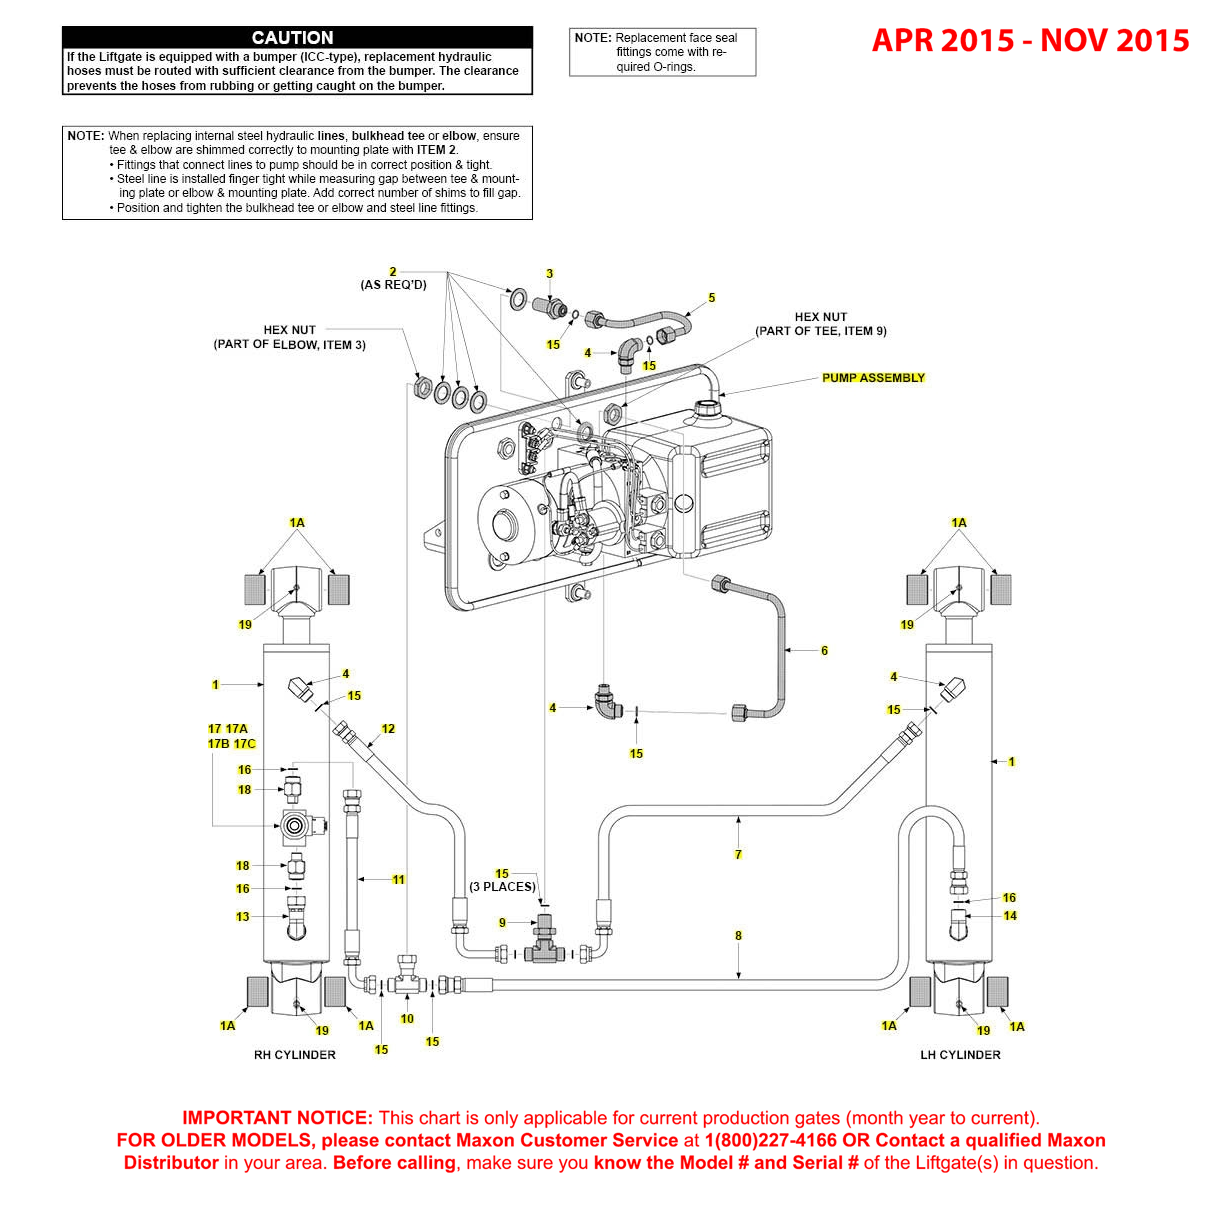 Maxon GPTWR (Apr 2015 - Nov 2015) Power Down Hydraulic Systems Diagram